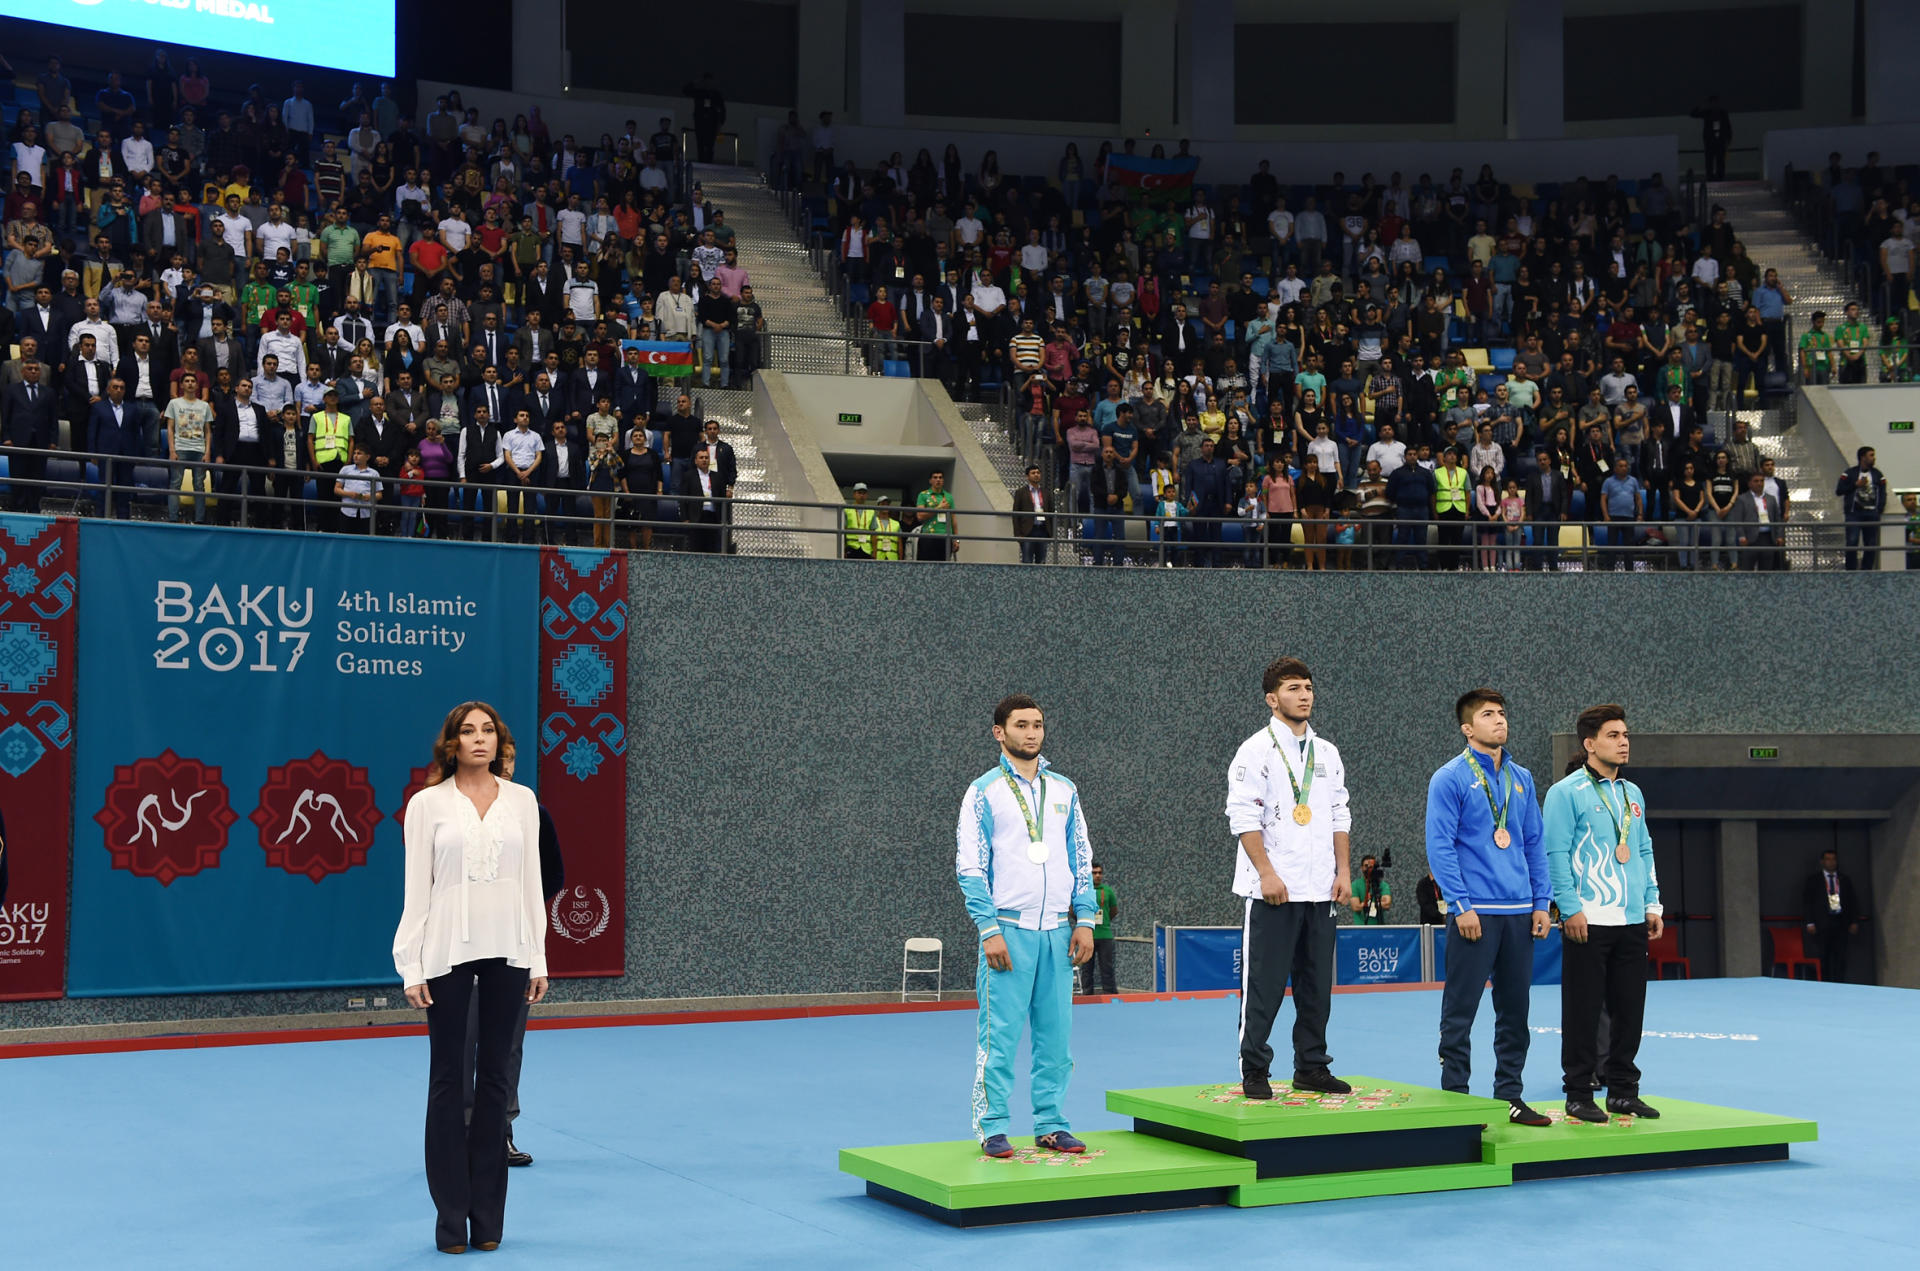 Первый вице-президент Мехрибан Алиева наградила победителей соревнований по борьбе Исламиады (ФОТО, ВИДЕО) (Обновлено)